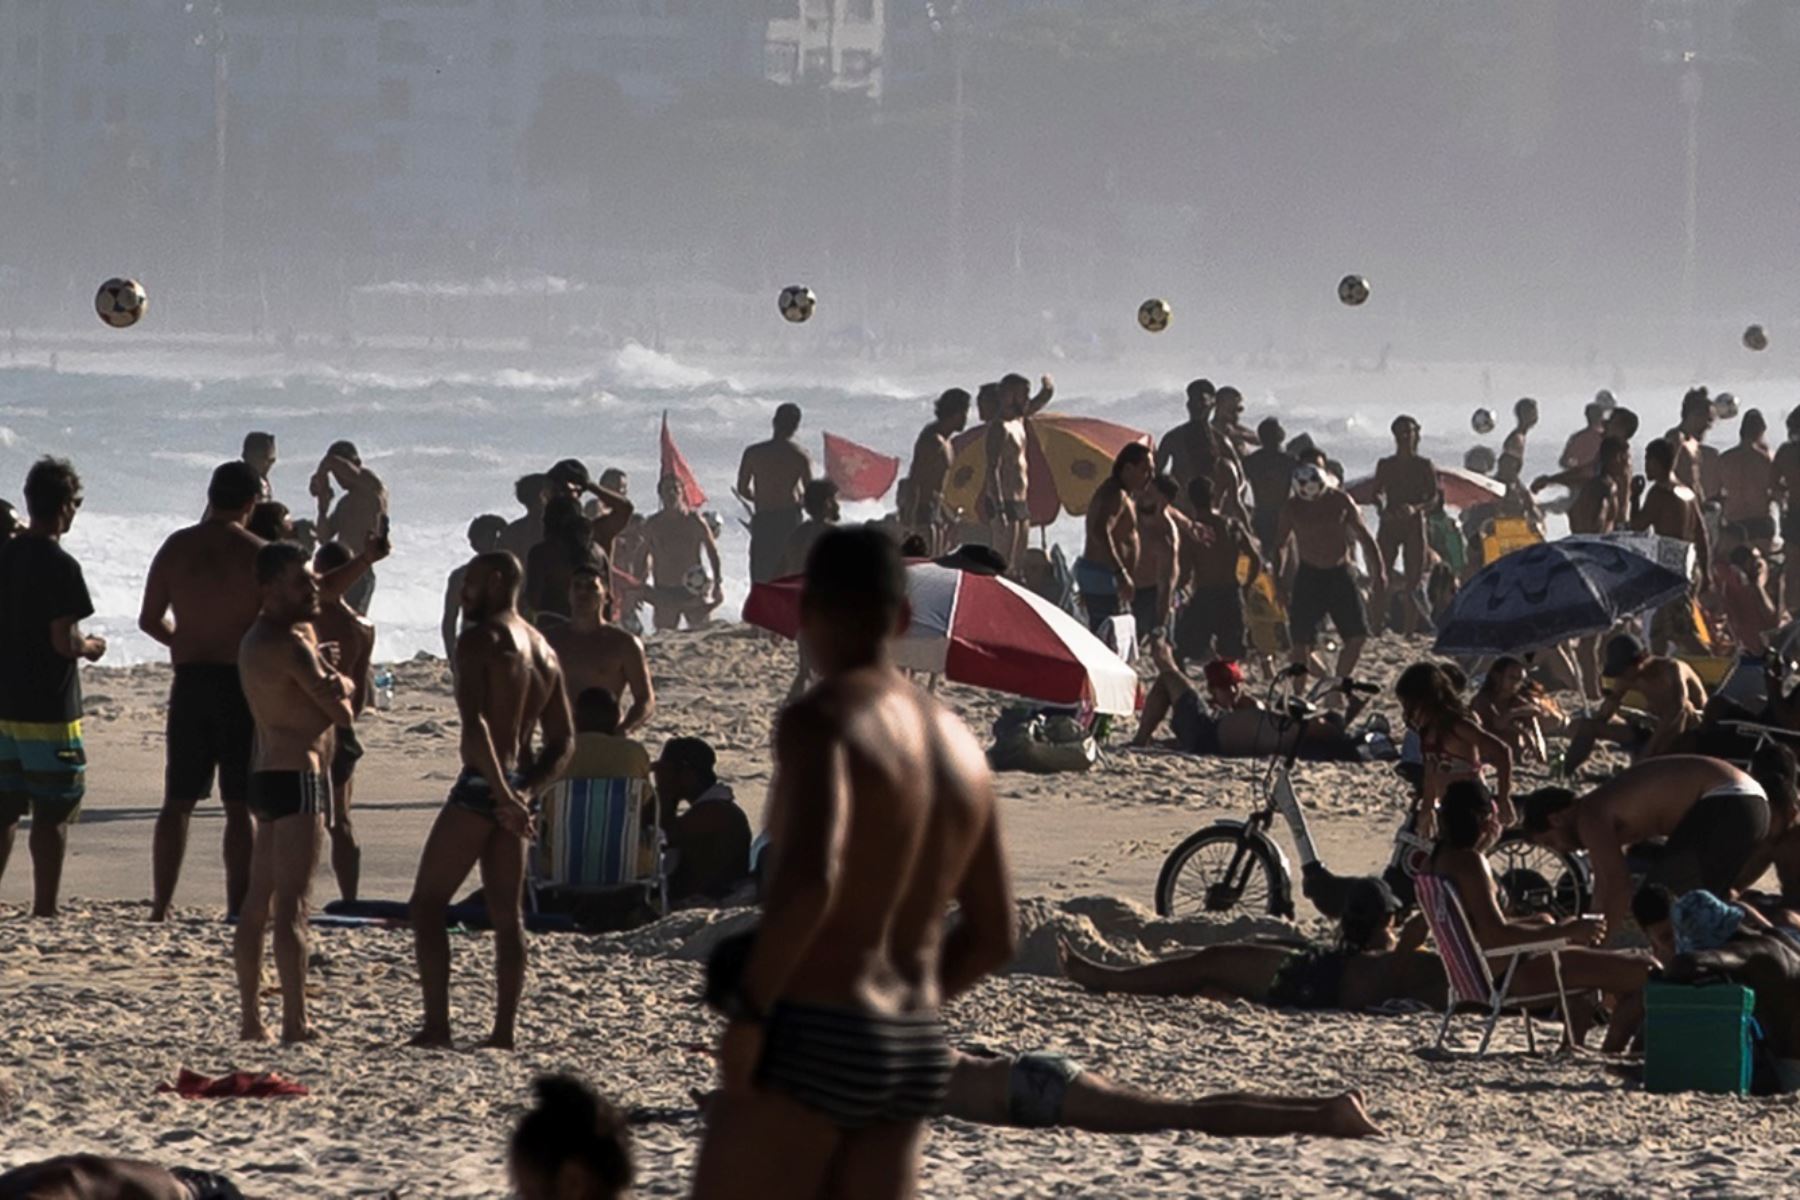 Bañistas toman el sol sin mantener distancia social para evitar la propagación del coronavirus , en la playa de Leme en Río de Janeiro.
Foto: AFP